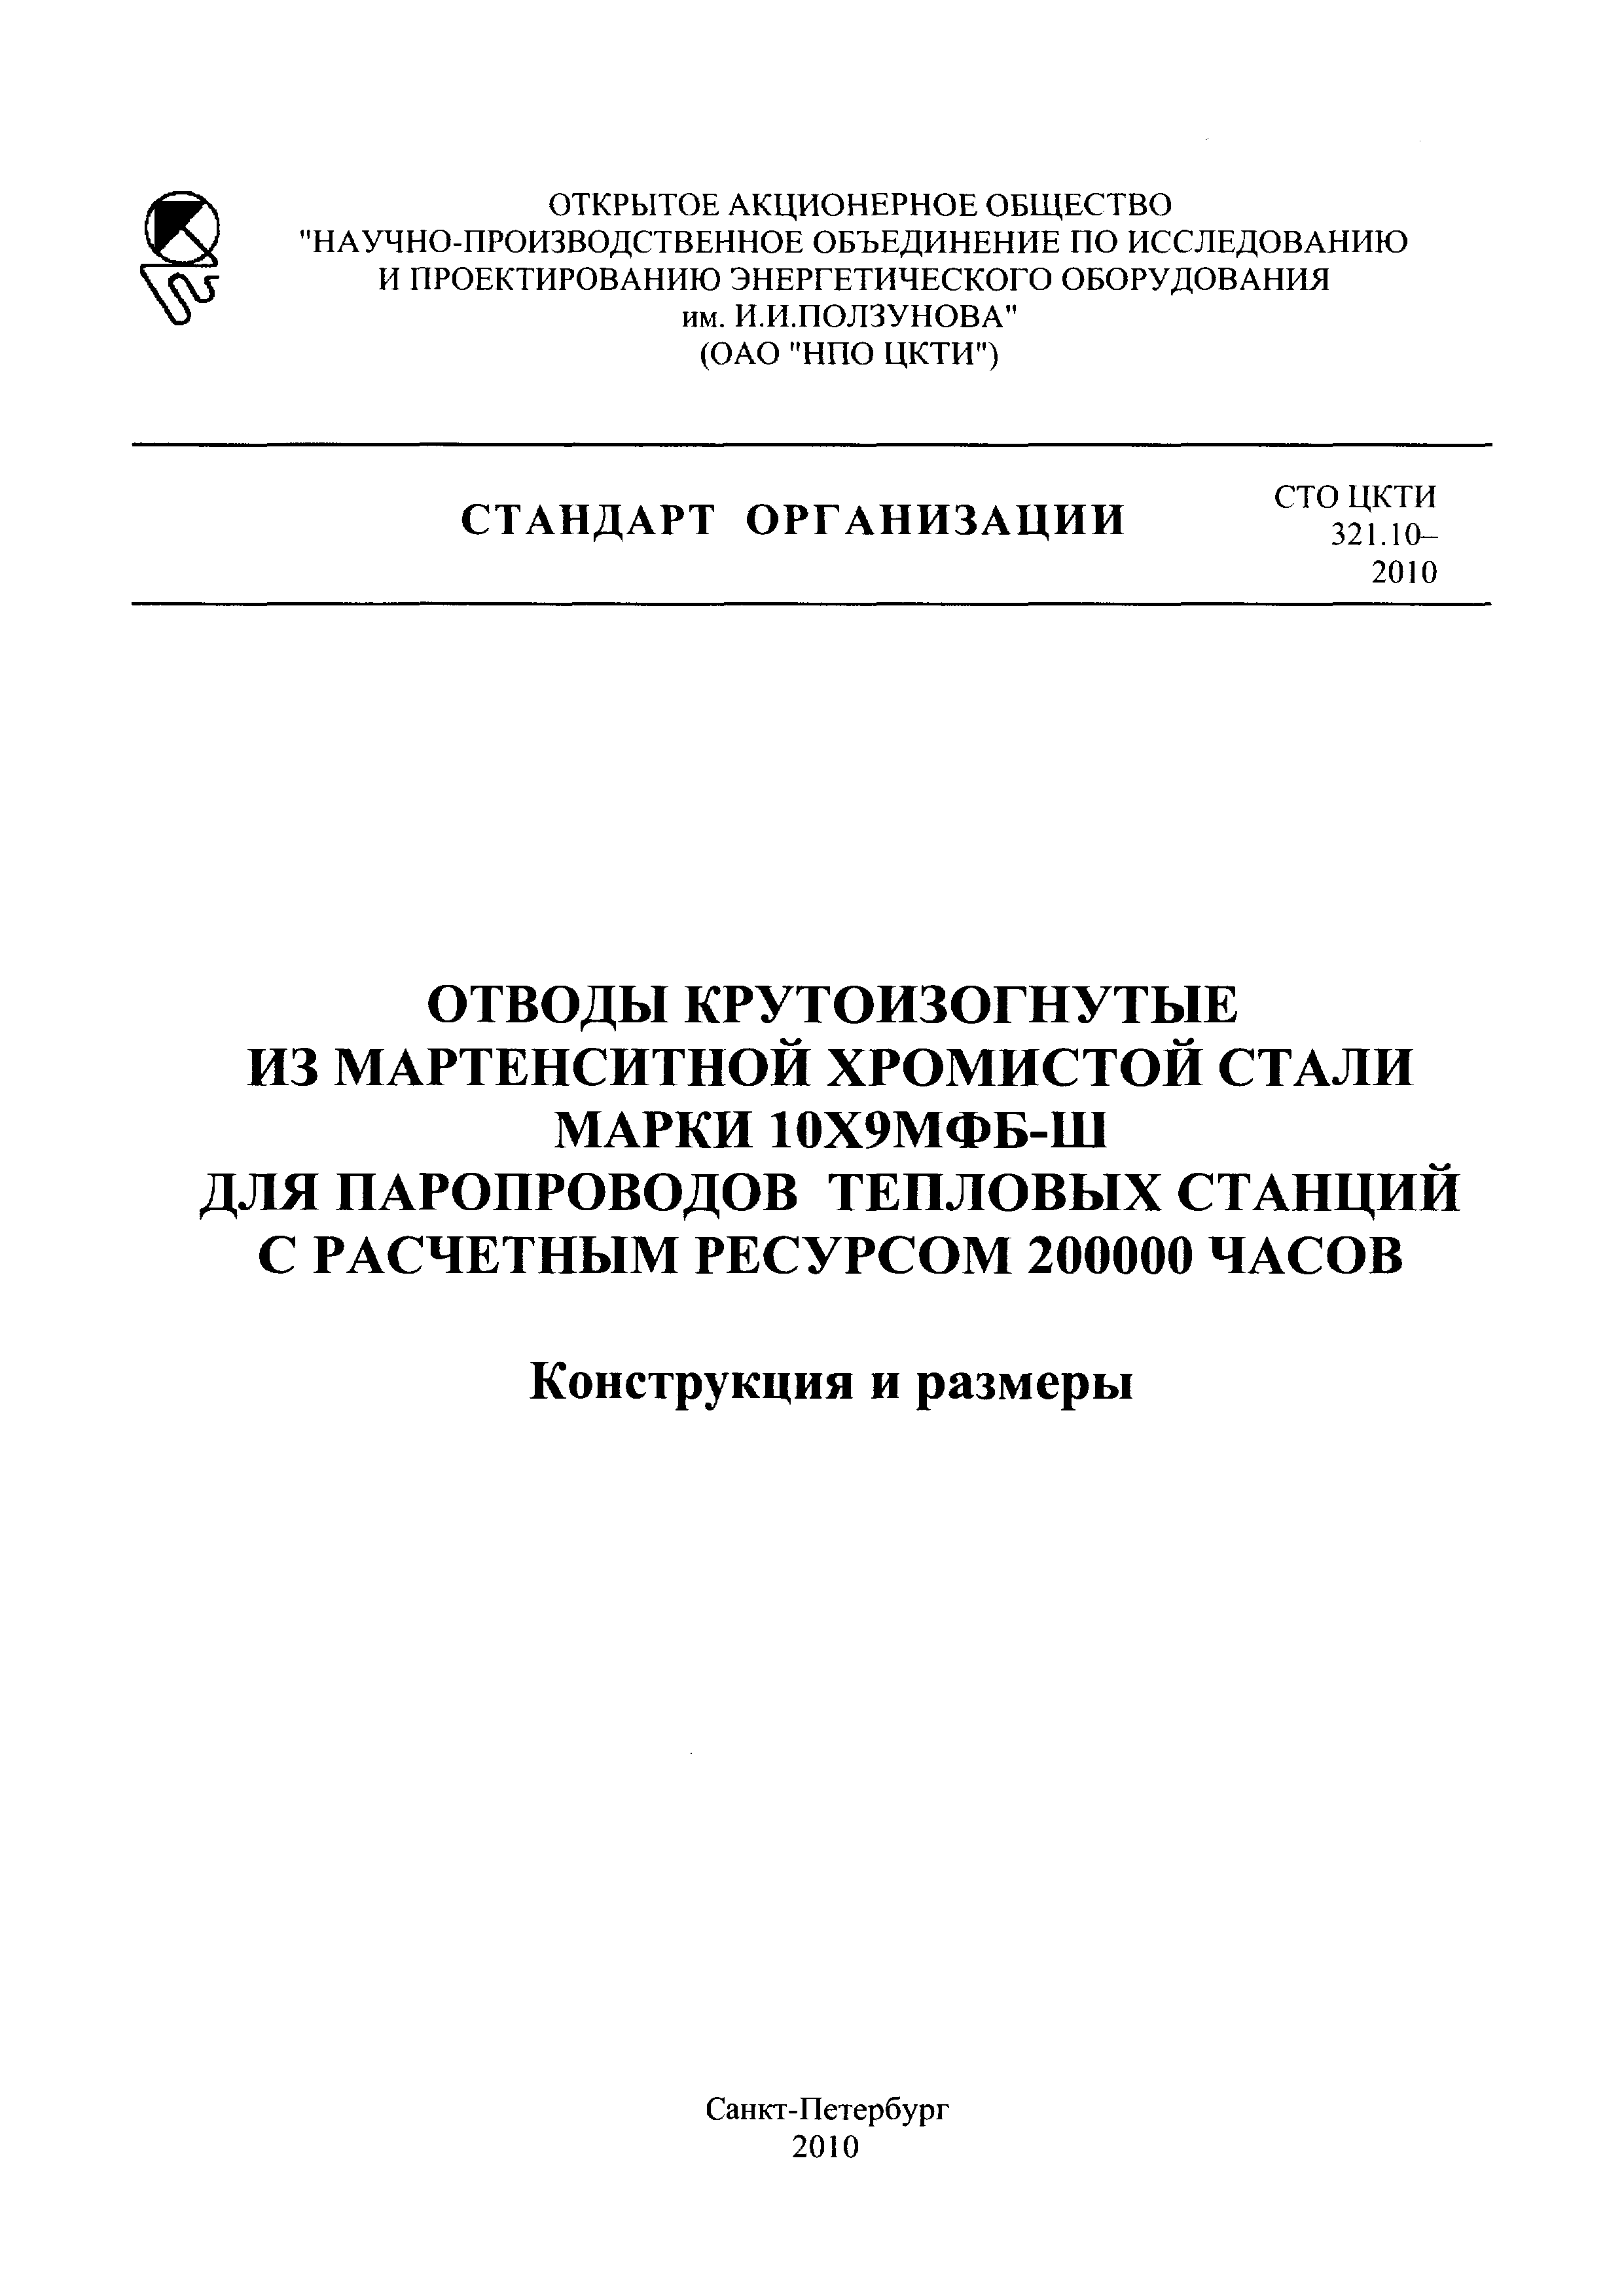 СТО ЦКТИ 321.10-2010